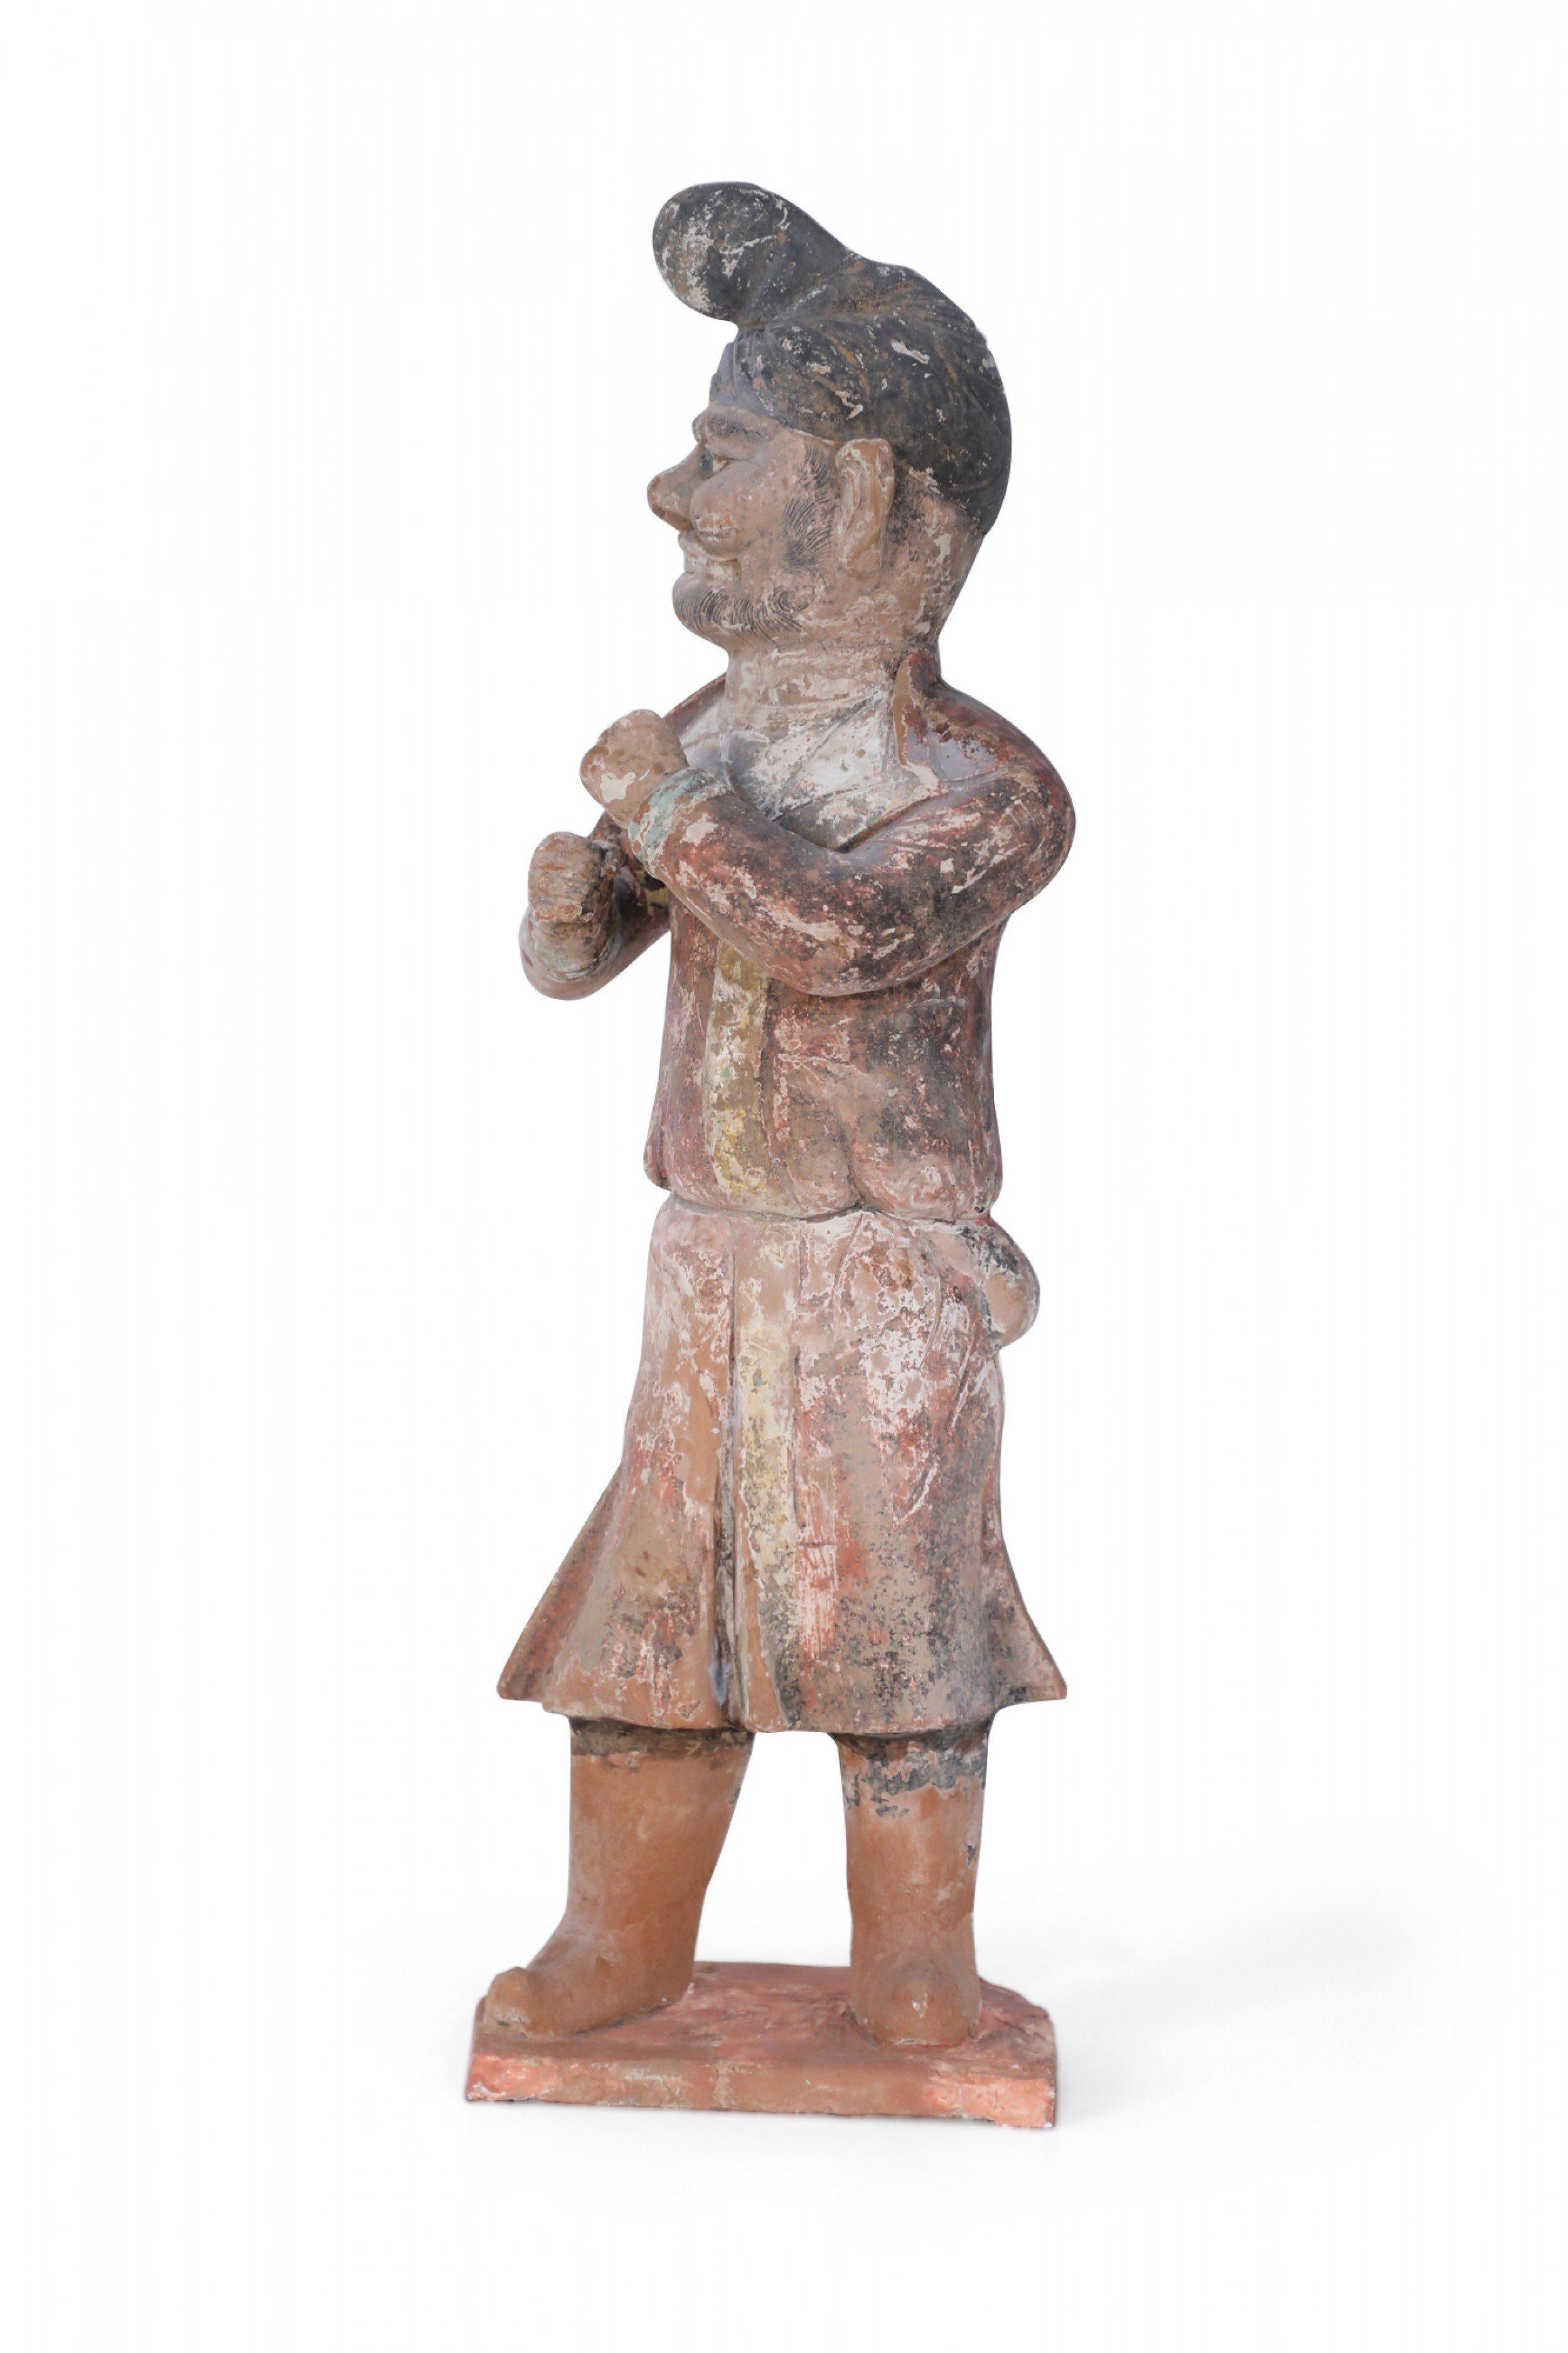 Ancienne figure tombale chinoise en terre cuite de style dynastie Tang représentant un homme les poings levés, portant un chapeau ou un couvre-chef et des bottes, debout sur une base à facettes de couleur rouille.
 